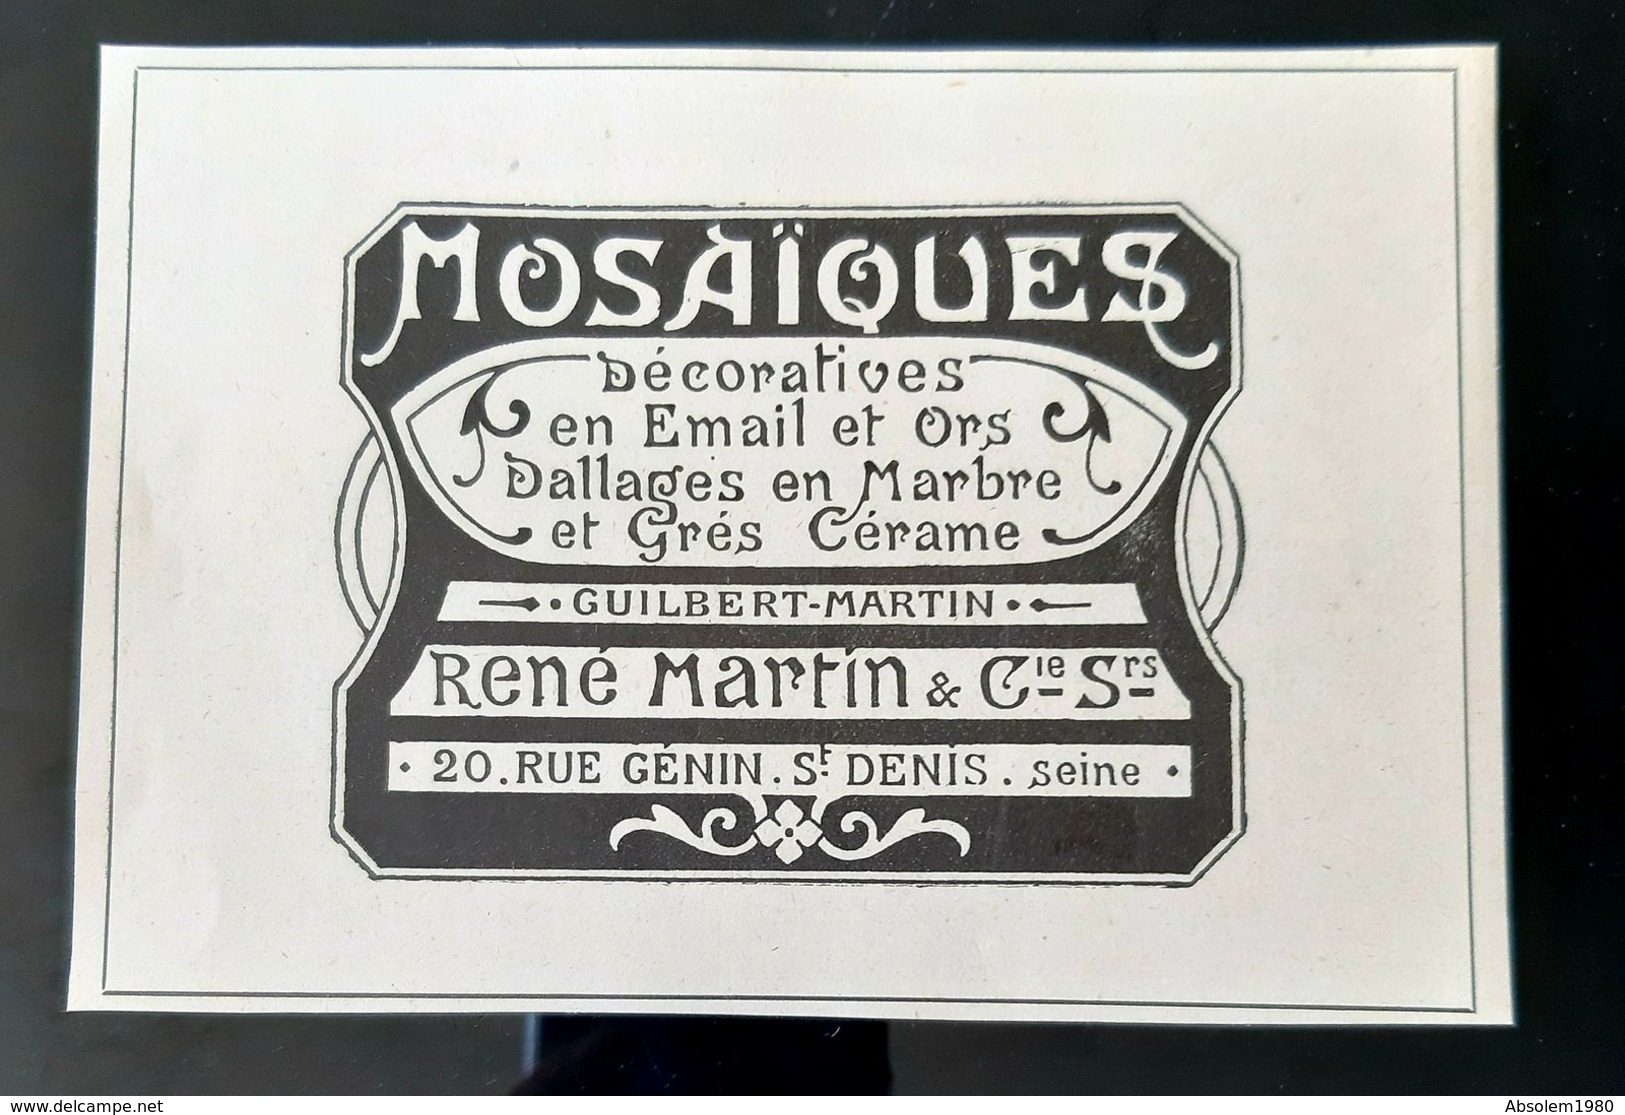 MOSAIQUES DECORATIVES RENE GUILBERT MARTIN EMAIL GRES CERAME ART NOUVEAU PUBLICITE 1900 ADVERTISING JUGENDSTIL MOSAIC - Publicités